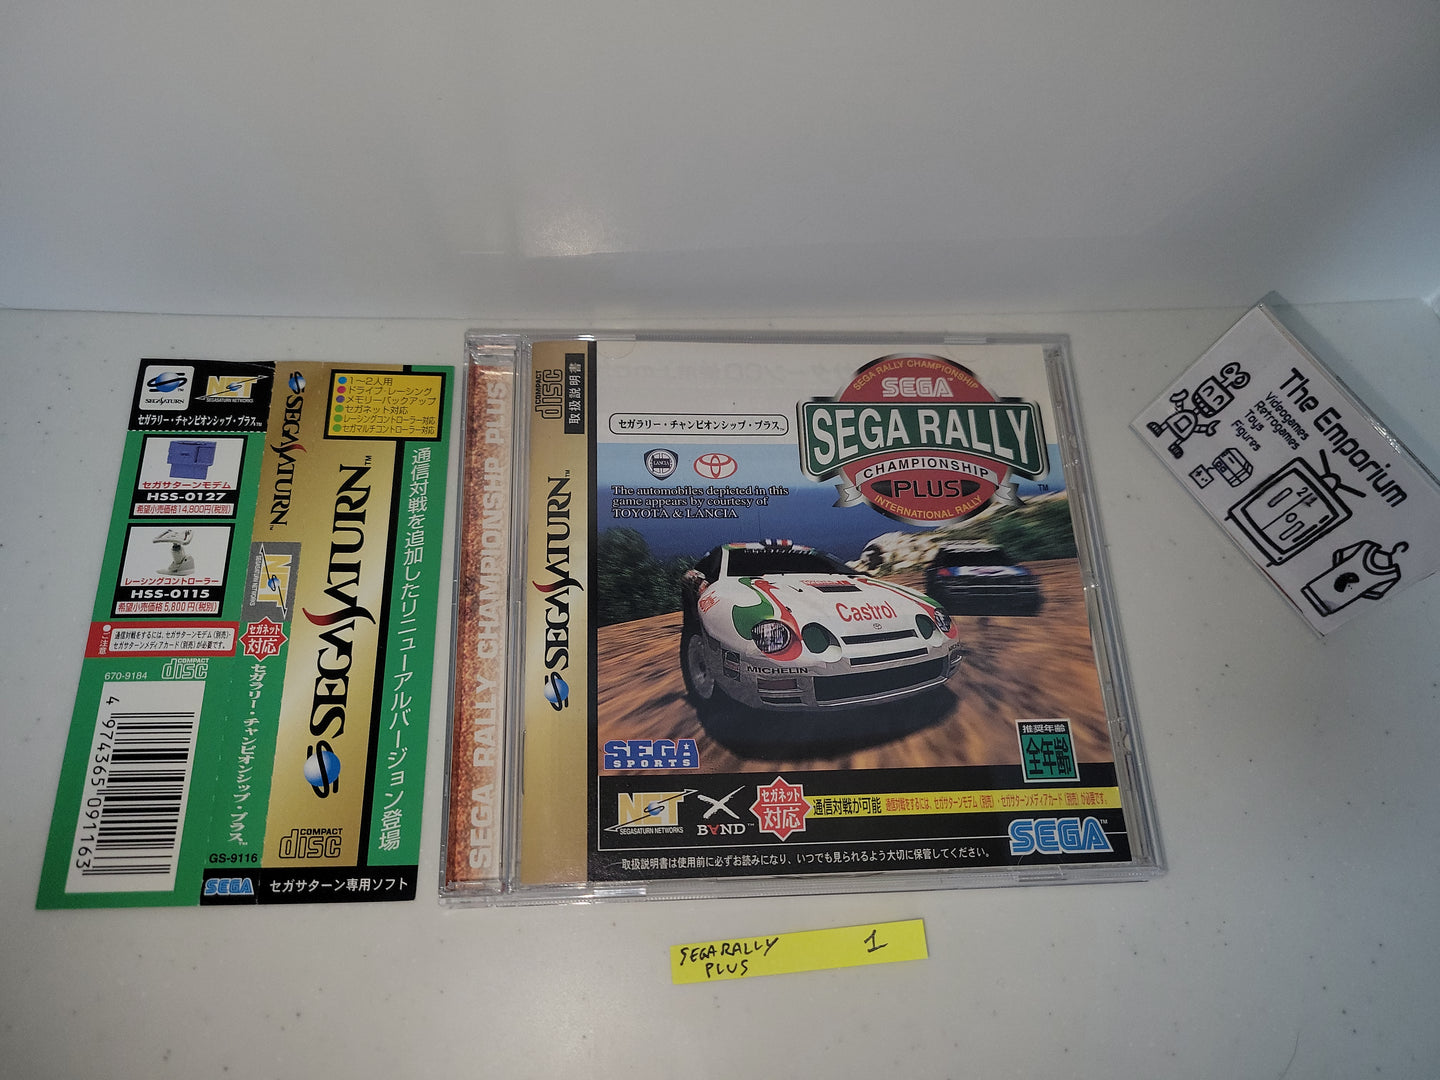 Sega Rally Championship Plus for SegaNet - Sega Saturn SegaSaturn